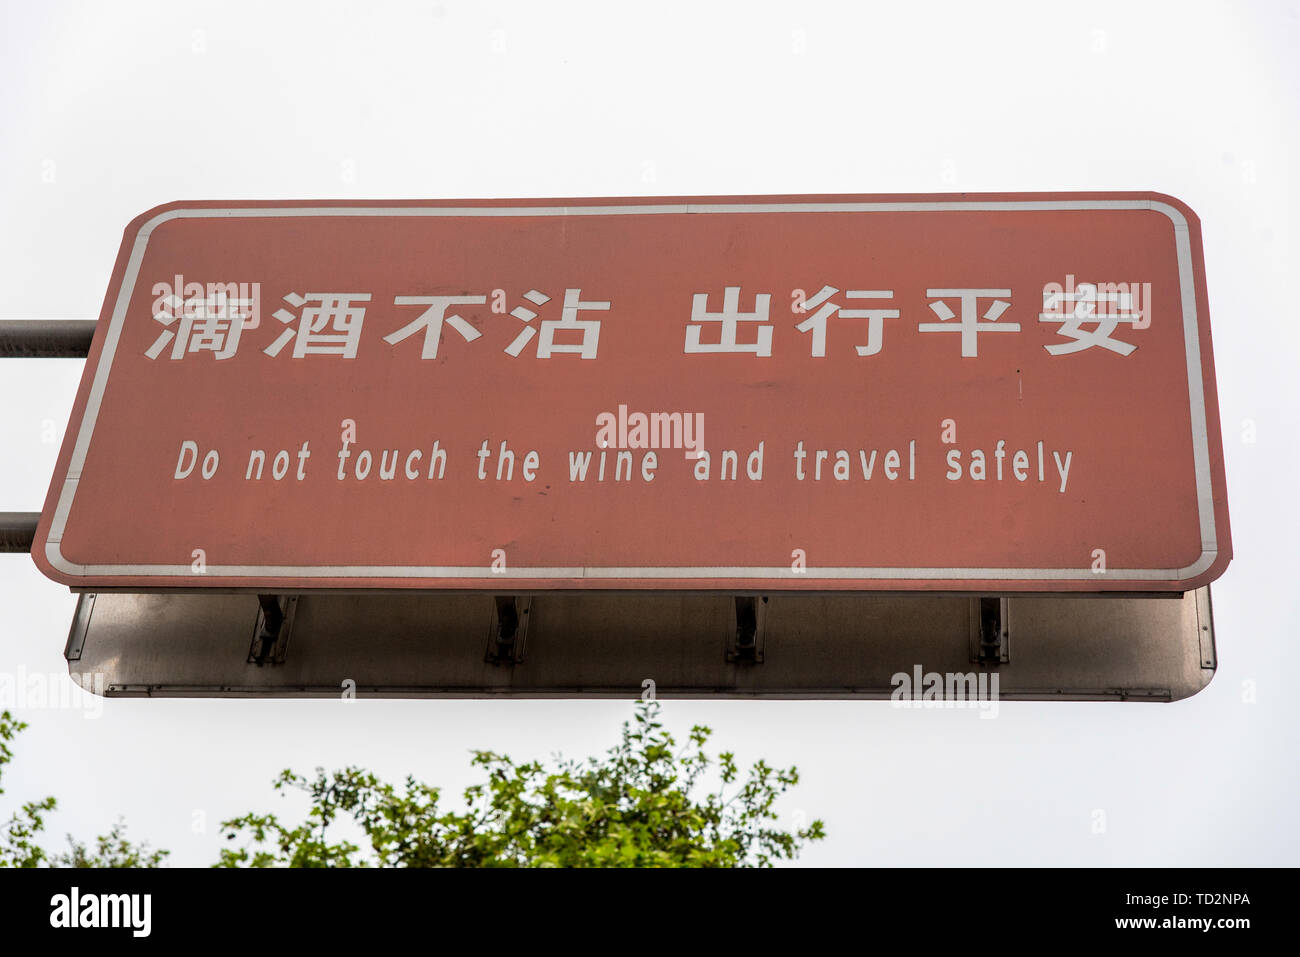 Ne touchez pas le vin et voyager en toute sécurité un signe en chinois et anglais photographié dans la ville de Dujiangyan, province du Sichuan, Chine Banque D'Images